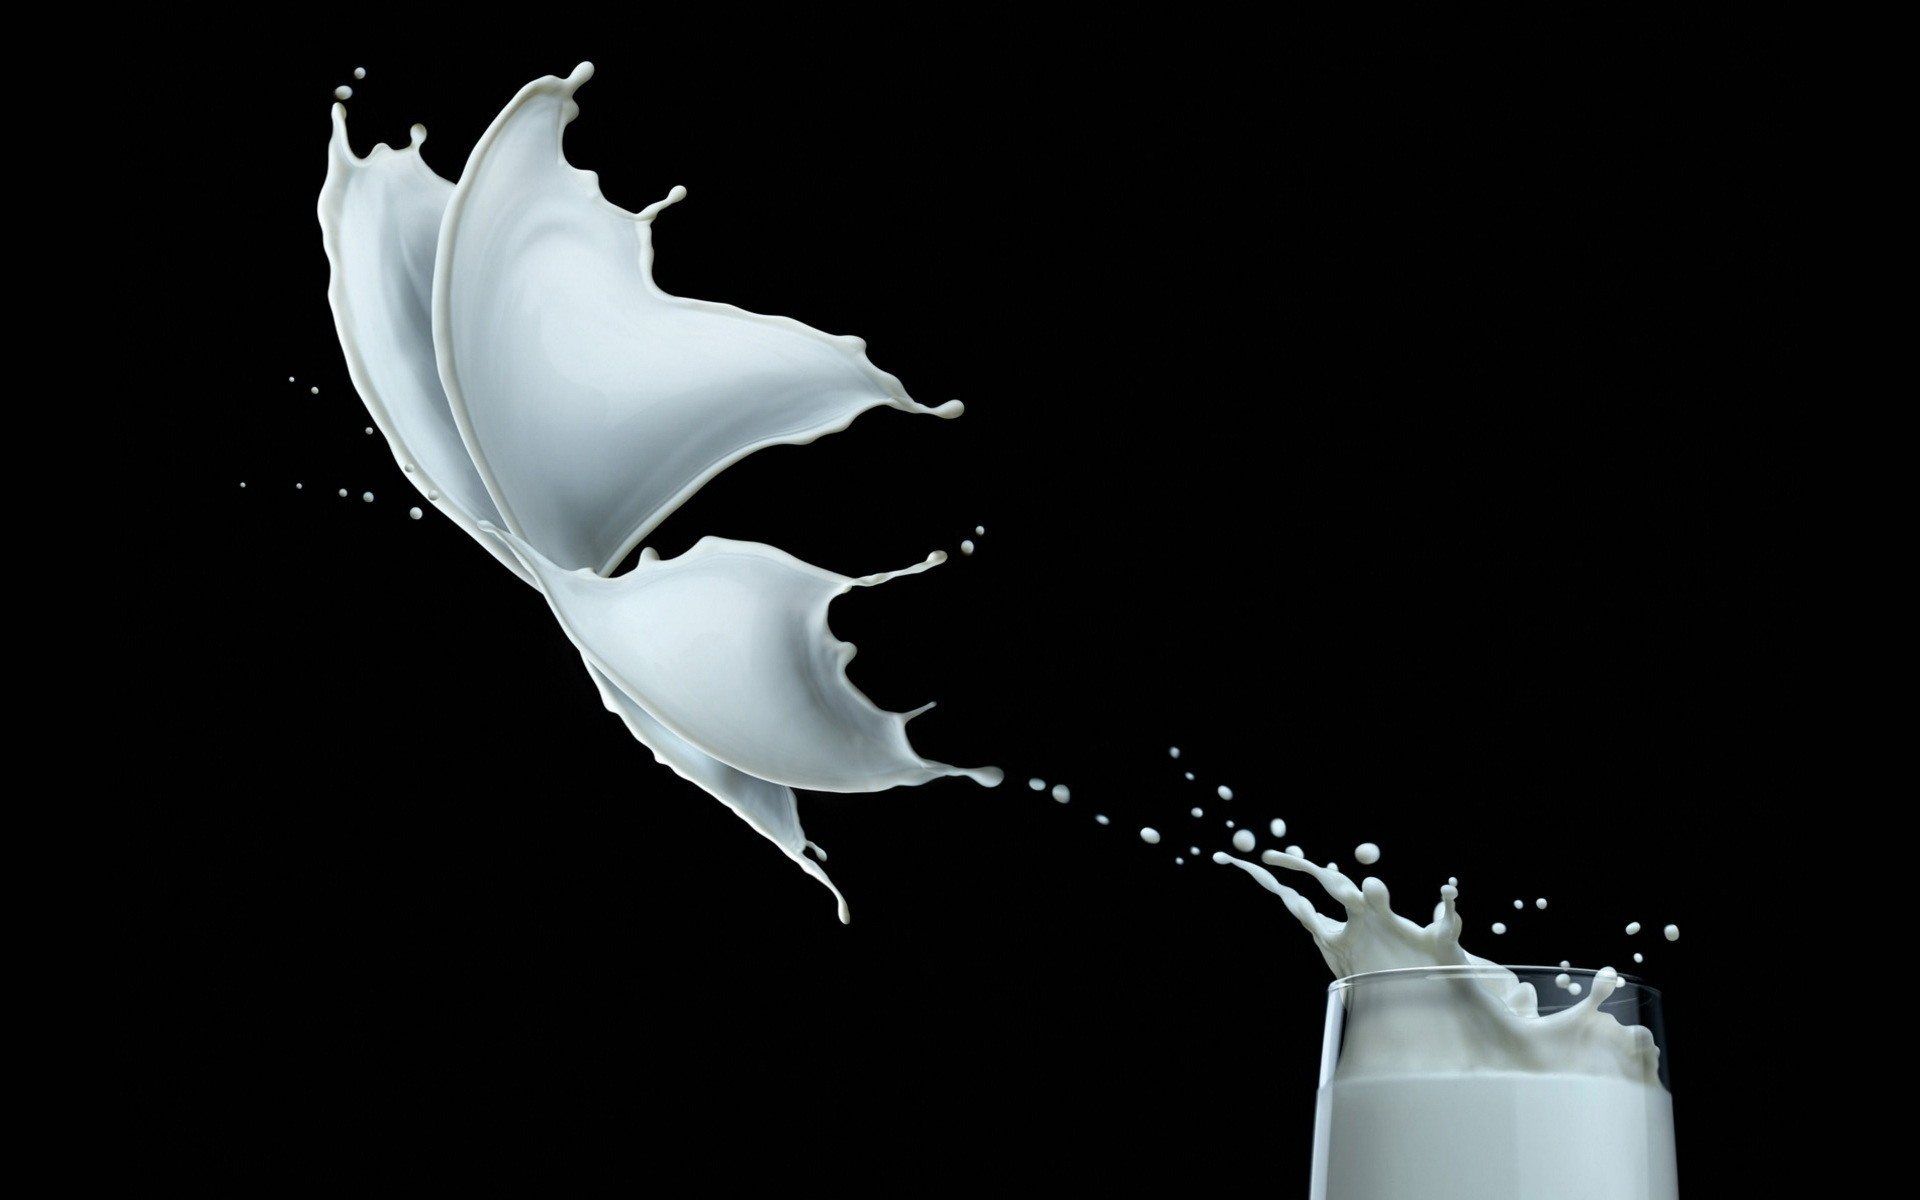 تصویر جالب و دیدنی از شیر خوشمزه به شکل پروانه 